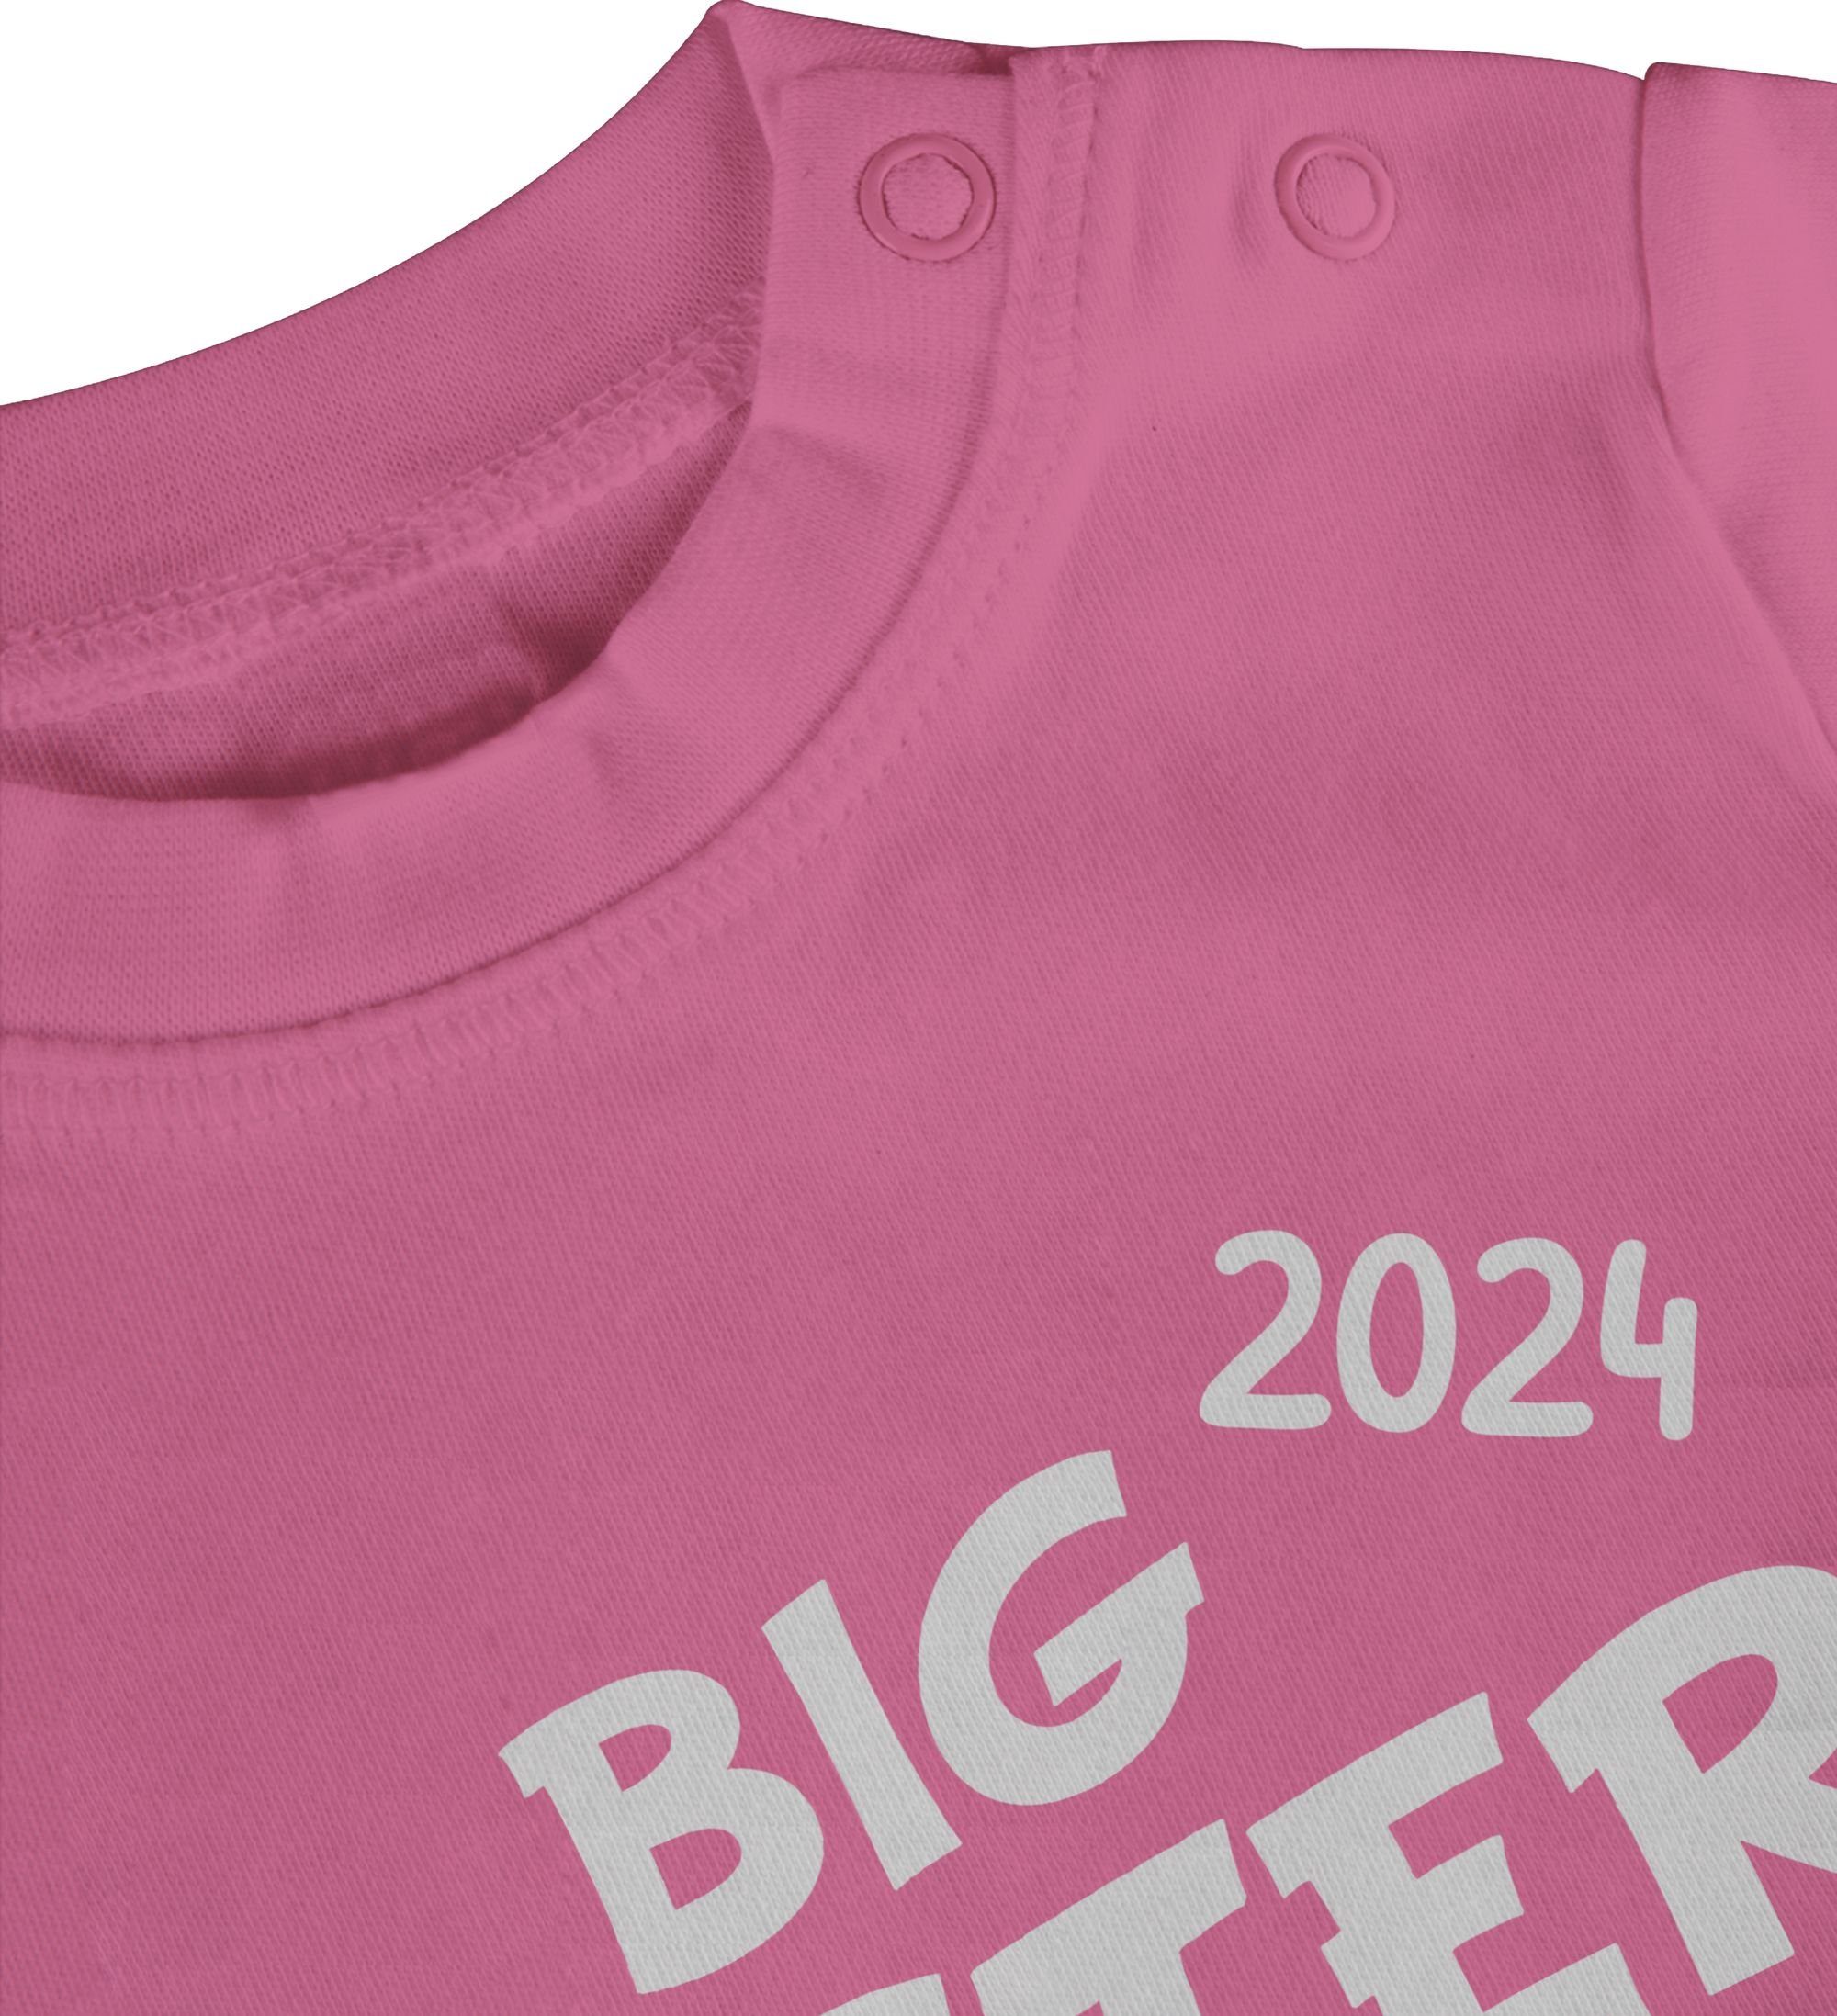 Sister T-Shirt Big loading Pink Schwester Bruder und 1 Geschwister 2024 Shirtracer